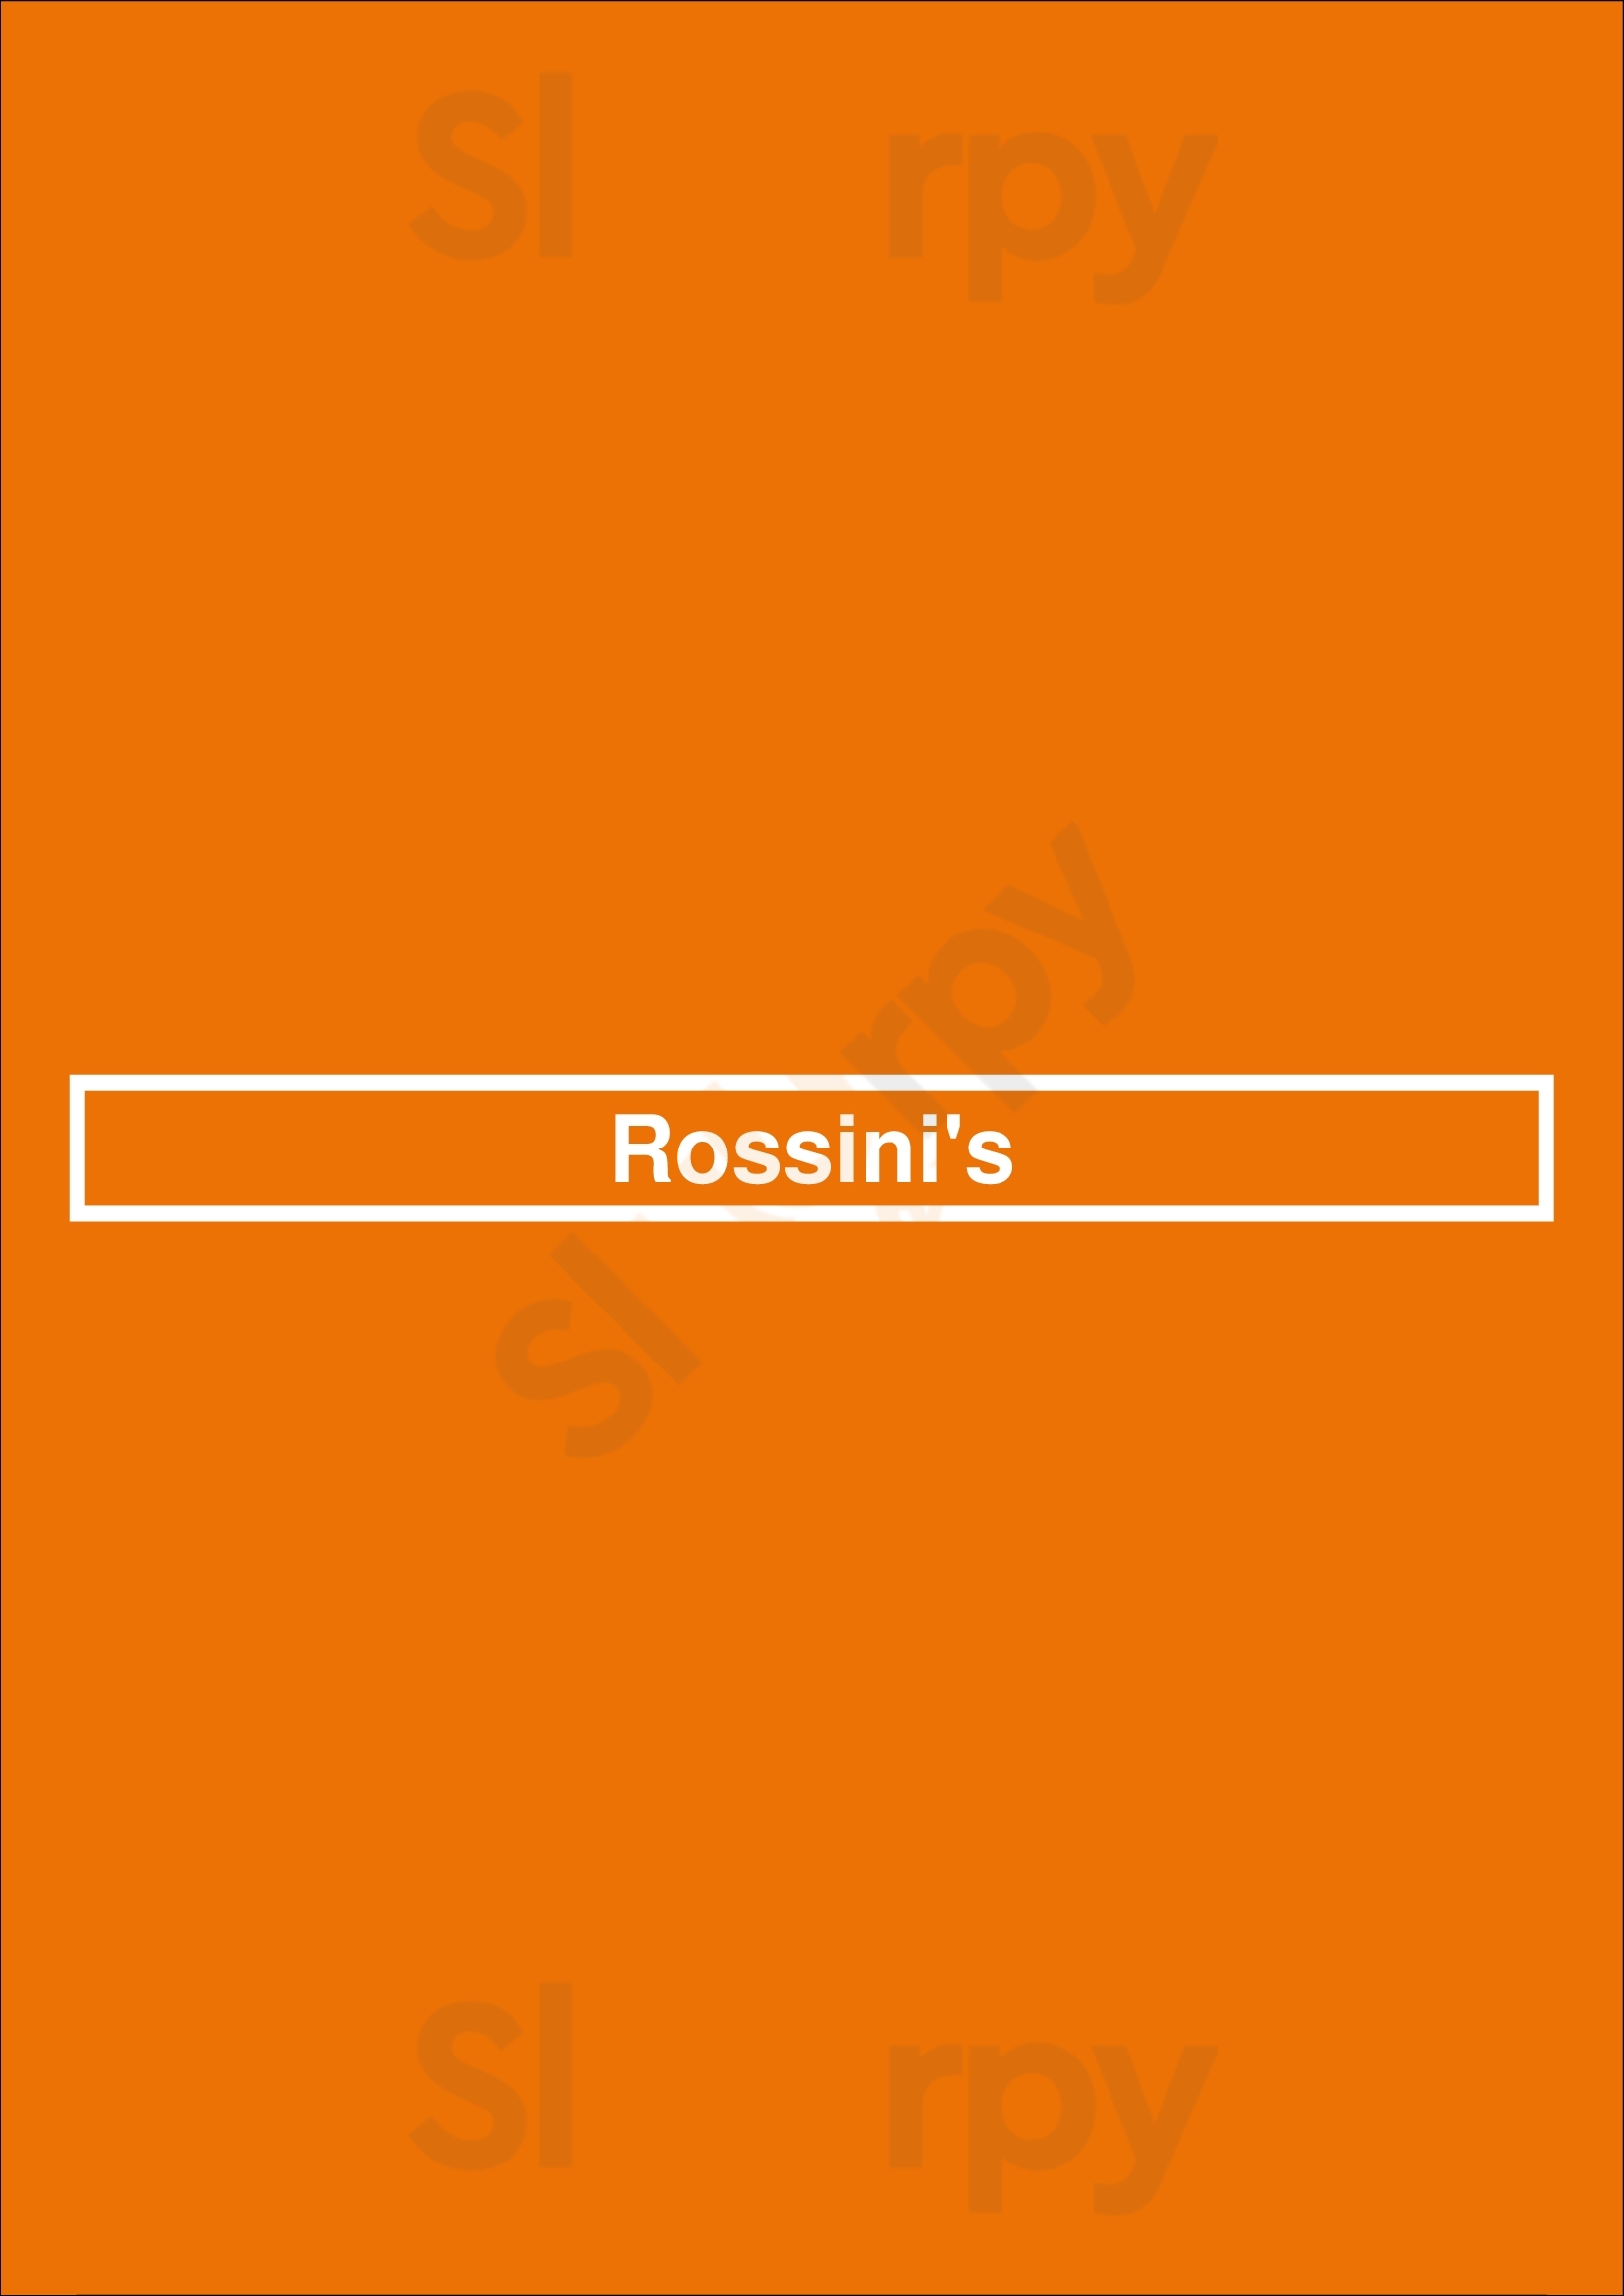 Rossini's กรุงเทพมหานคร (กทม.) Menu - 1